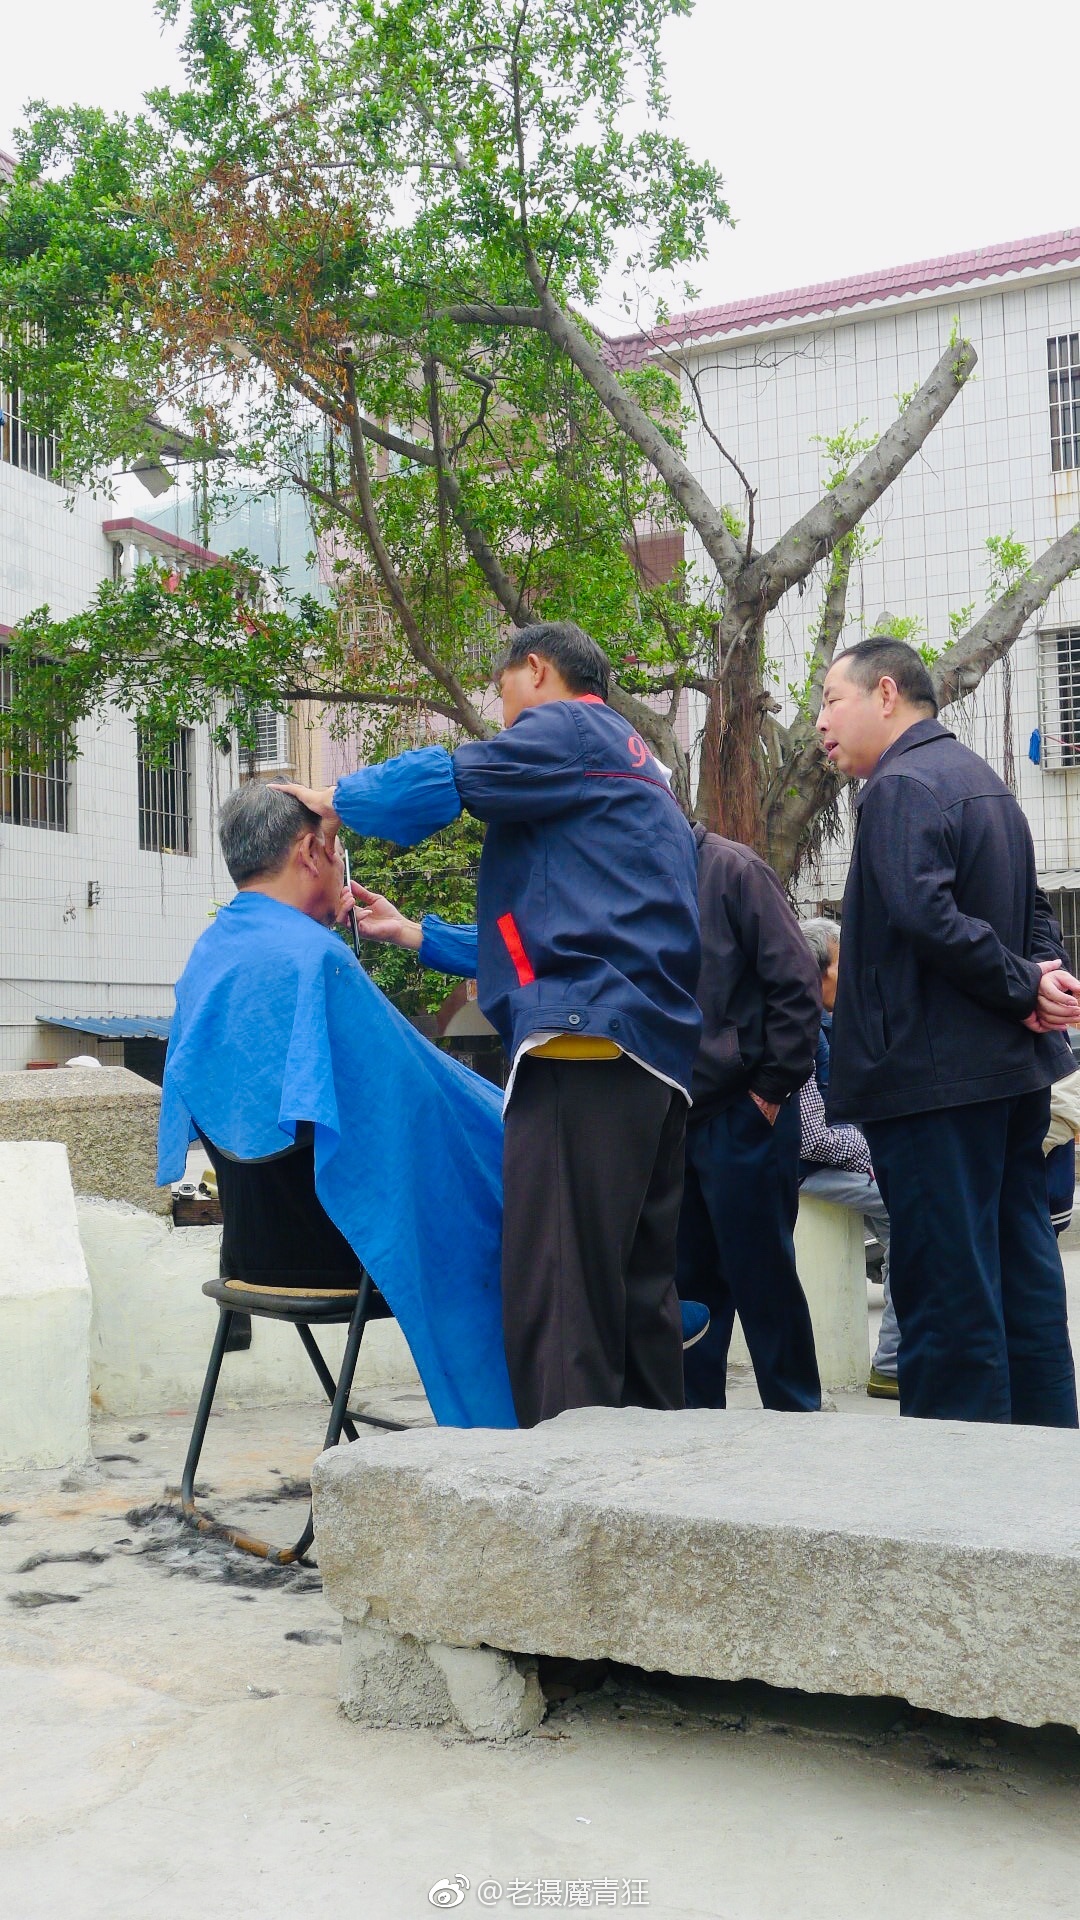 最便宜的理发店街头理发师像现在这样理发现在真的很少了 @中国